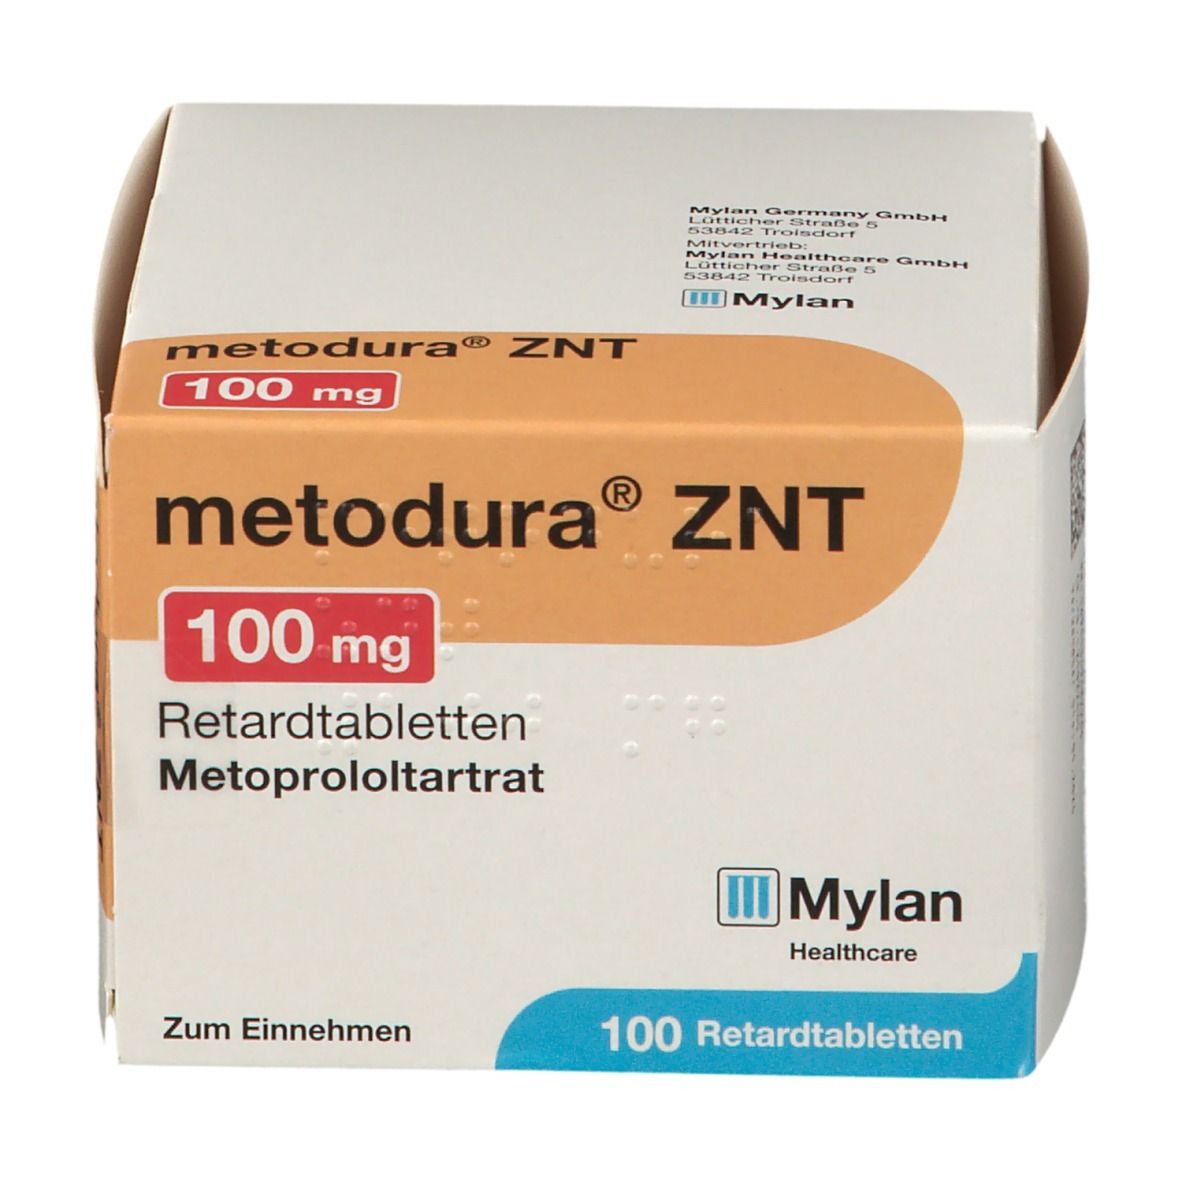 Metodura® ZNT 100 mg